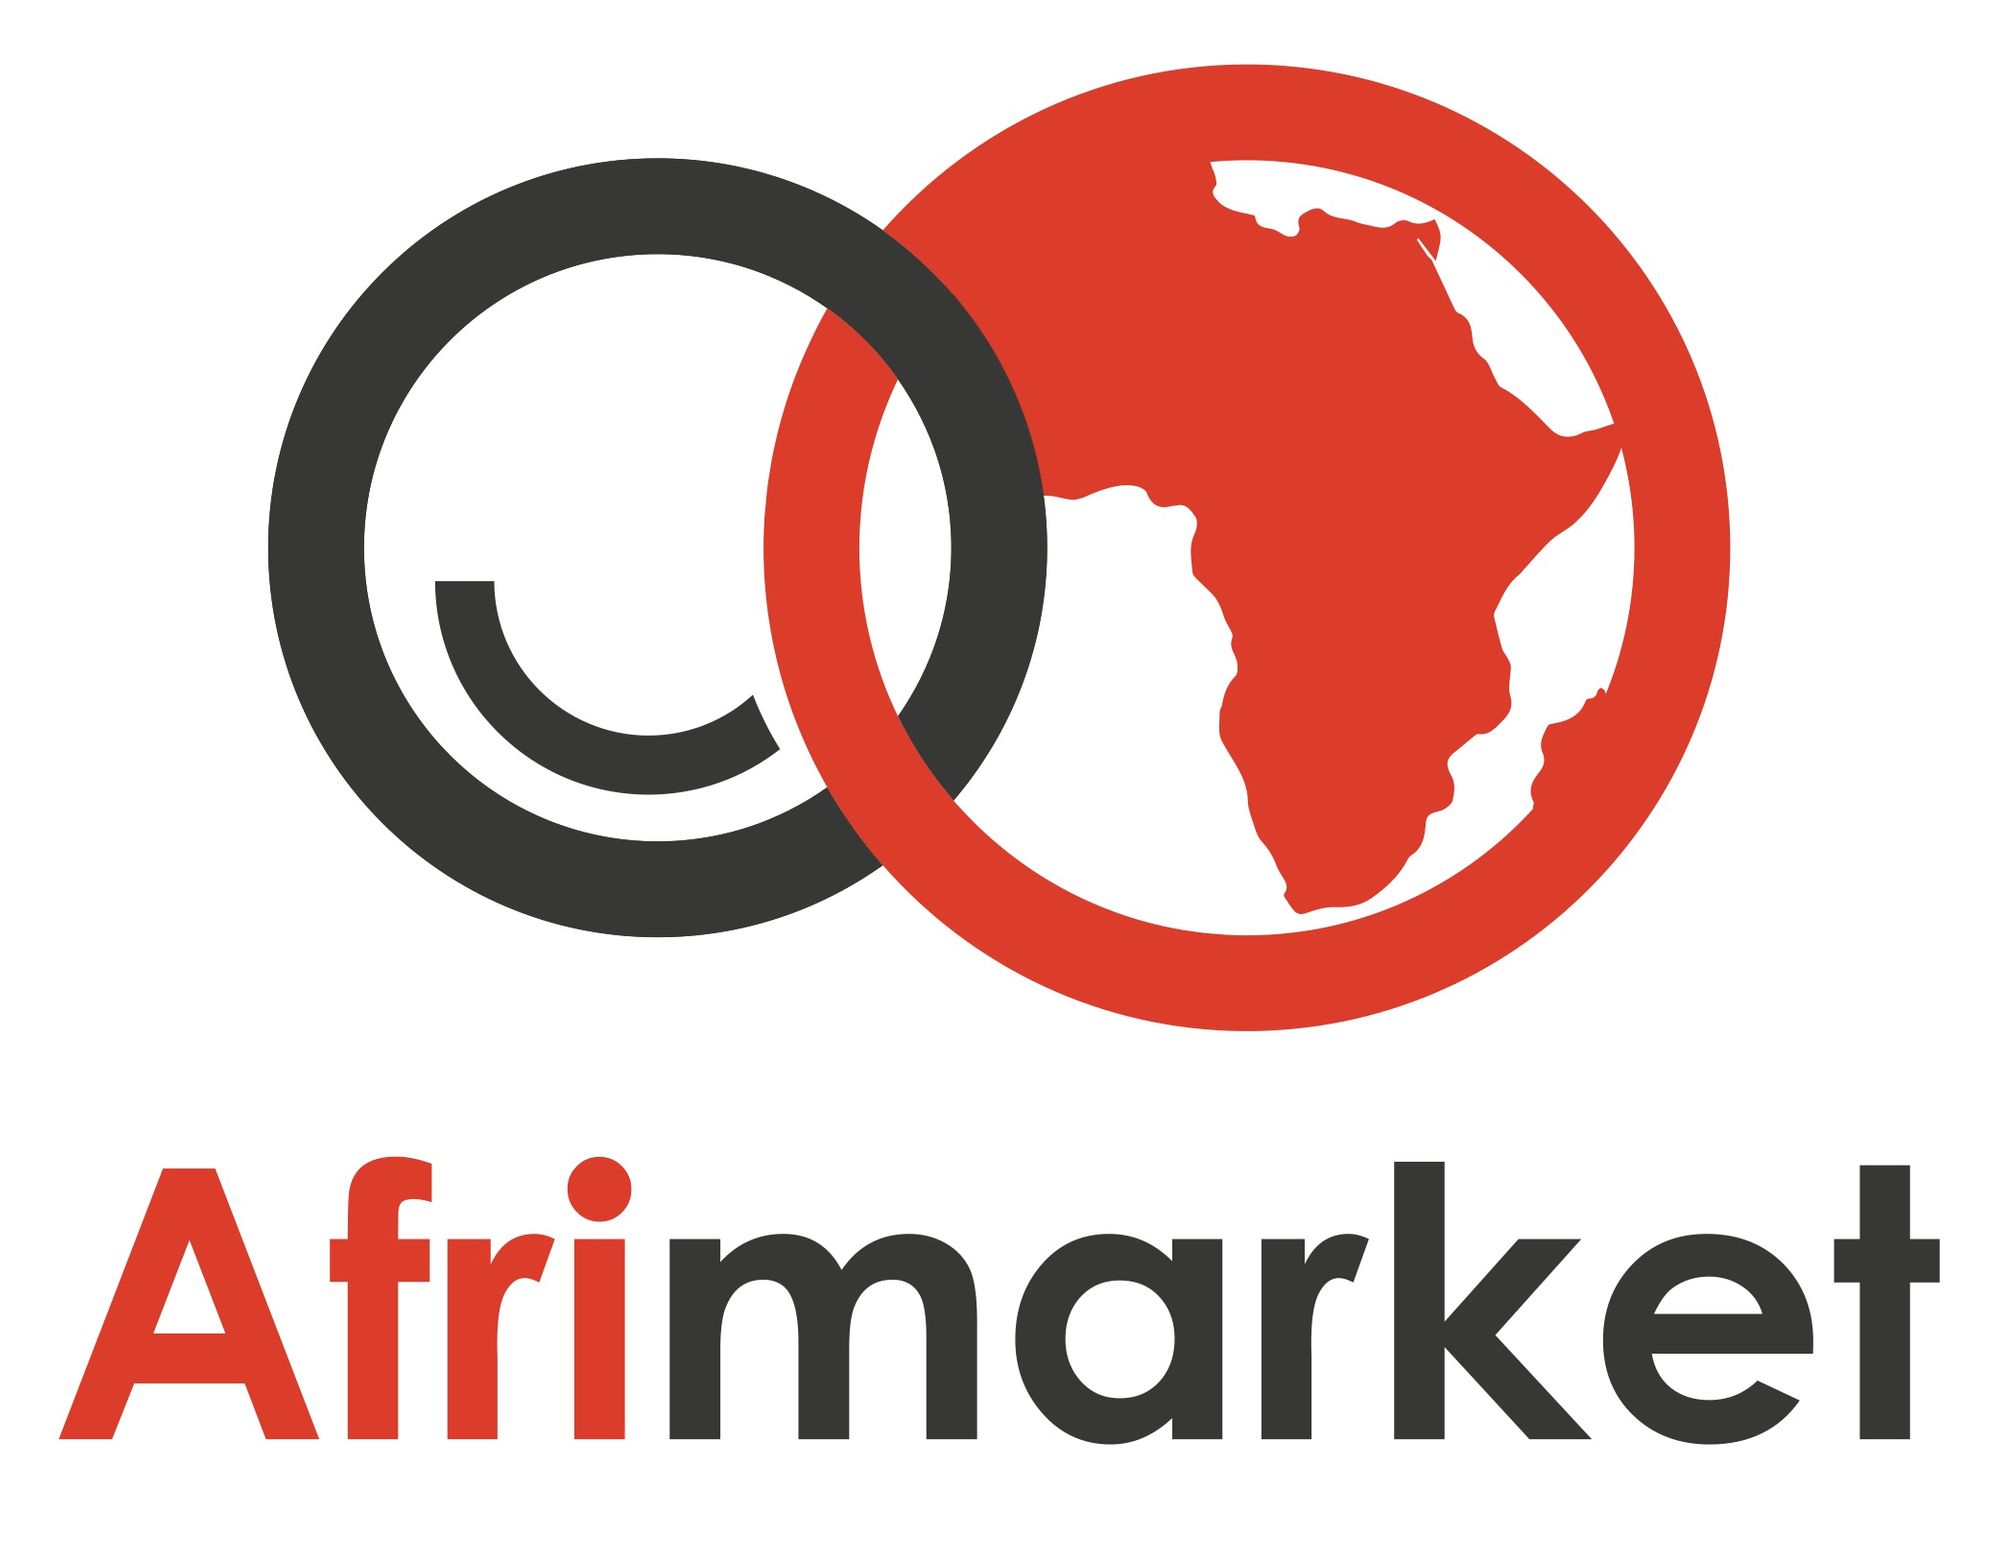 Afrimarket Lands €10 Million To Deploy E-commerce Platform Across Francophone Africa